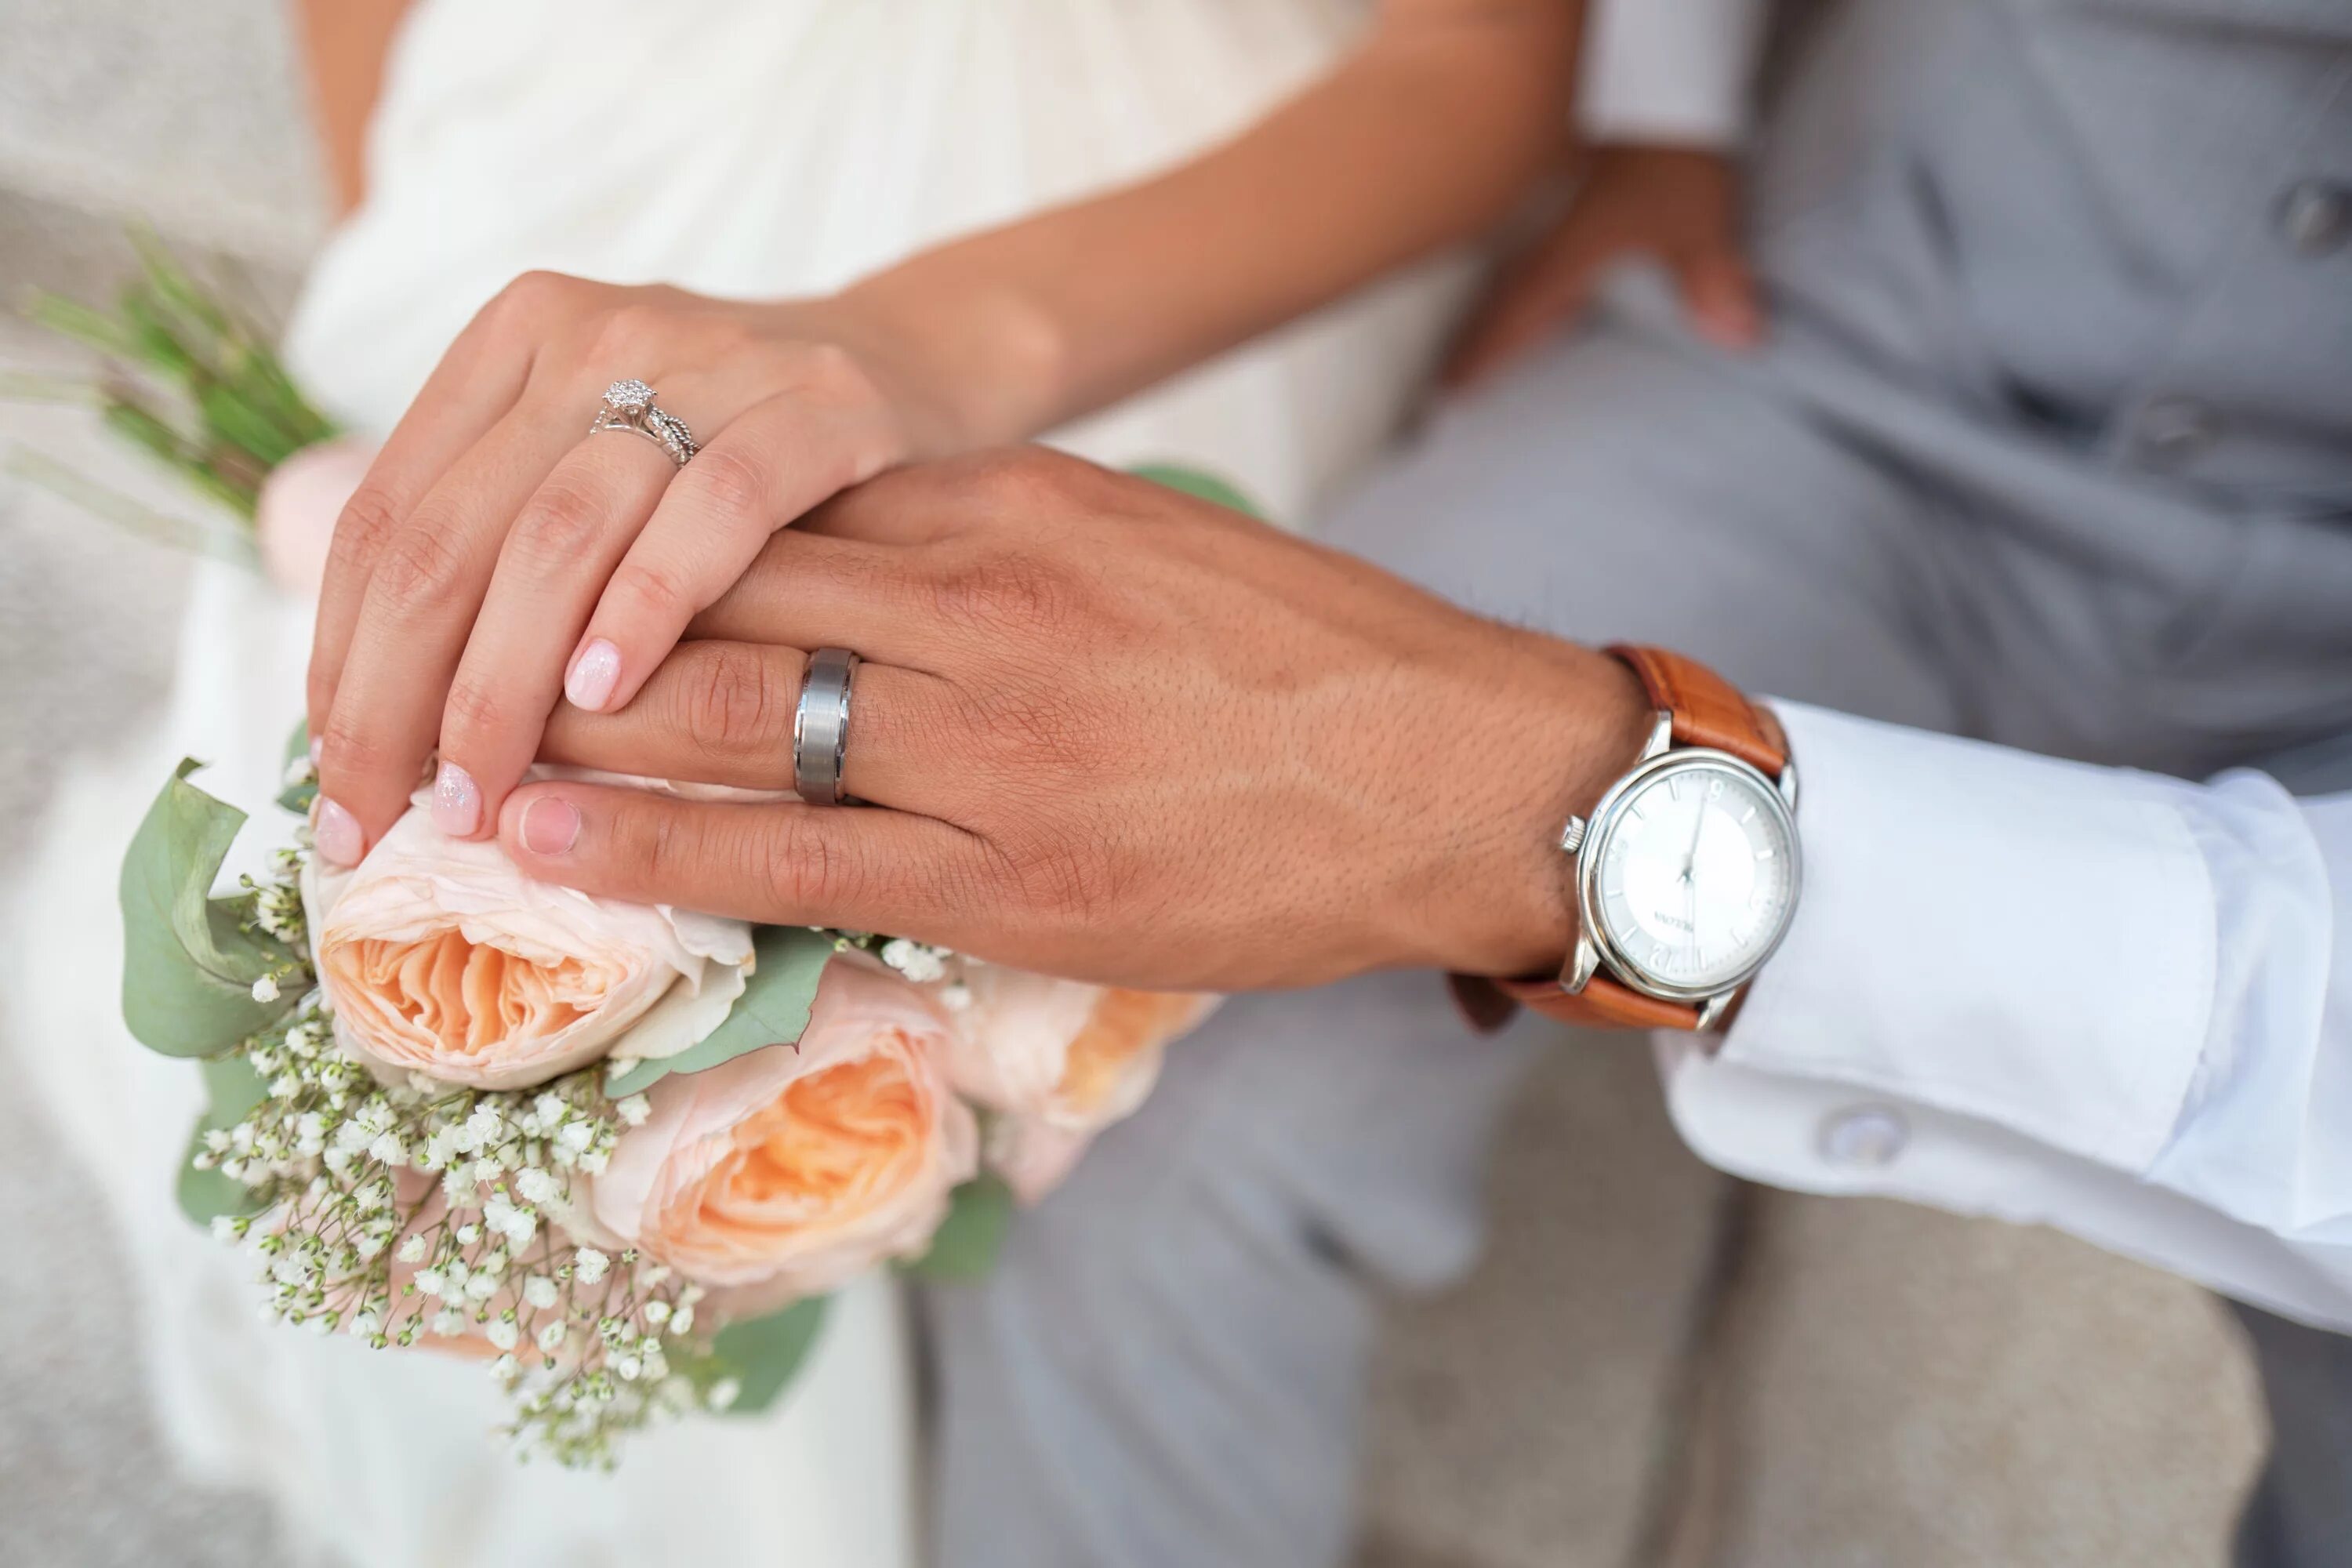 Свадебные кольца. Обручальные кольца на руках. Кольца на свадьбу обручальные. Обручальные кольца на руках жениха и невесты.